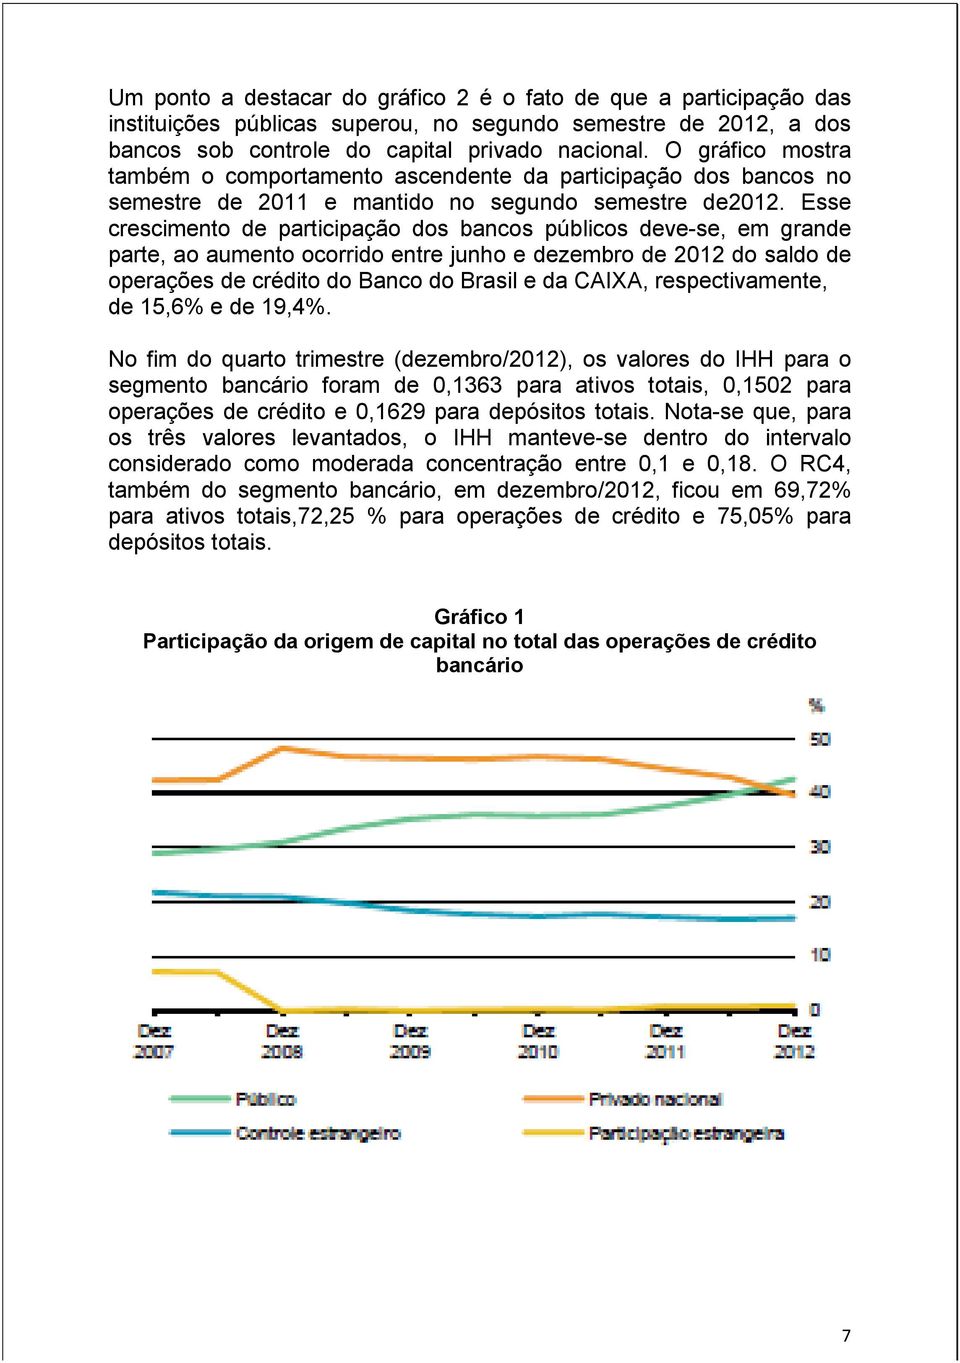 Esse crescimento de participação dos bancos públicos deve-se, em grande parte, ao aumento ocorrido entre junho e dezembro de 2012 do saldo de operações de crédito do Banco do Brasil e da CAIXA,